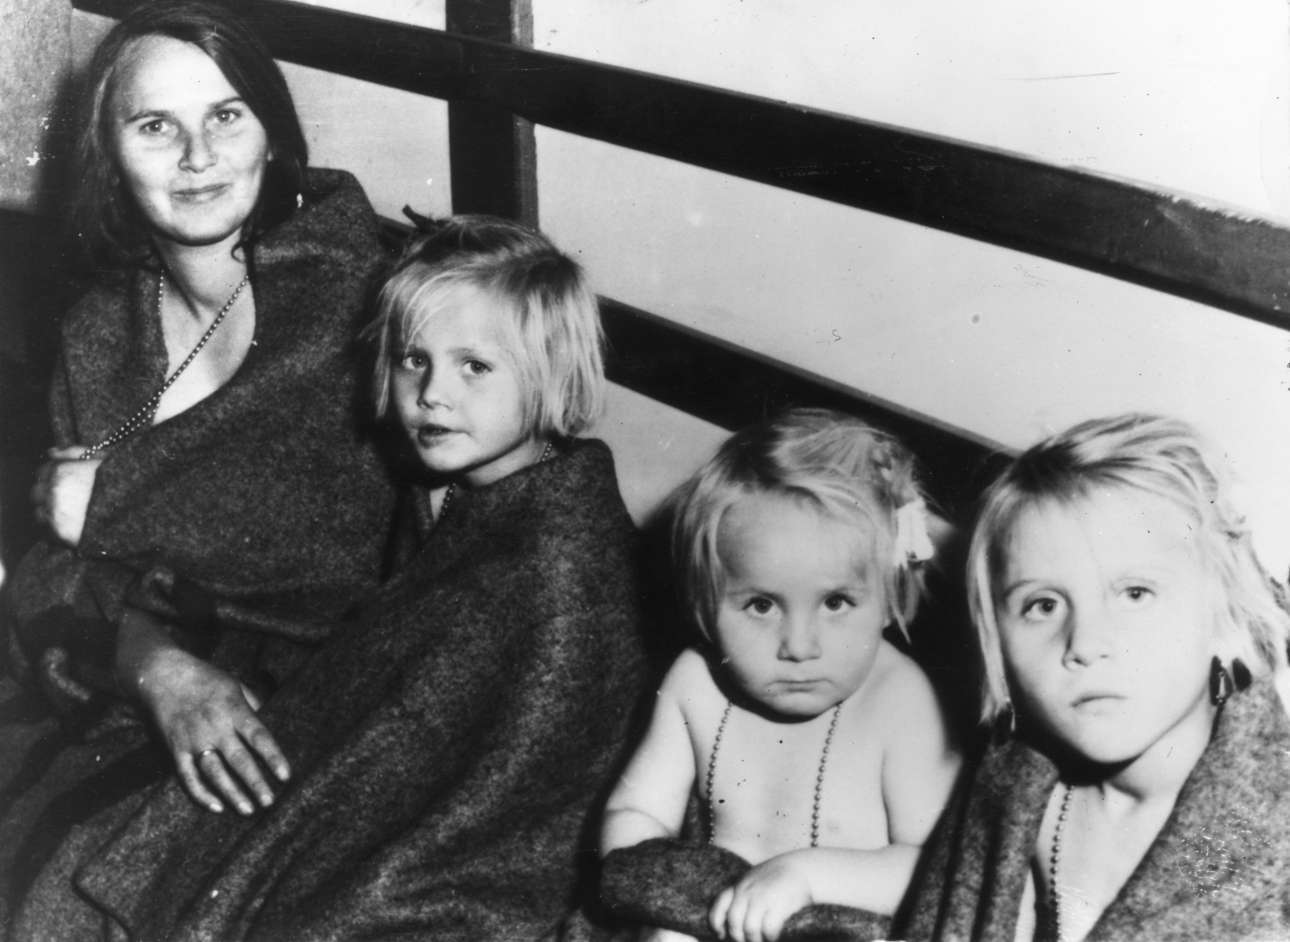 Η εξέγερση στην Ουγγαρία. O άντρας της χάθηκε στην εξέγερση. Η γυναίκα με τα τρία παιδιά της έχουν φθάσει στην Ελβετία. Περί τις 200.000 Ούγγροι διέφυγαν στη Δύση κατά την εισβολή των Σοβιετικών τον Νοέμβριο του 1956.